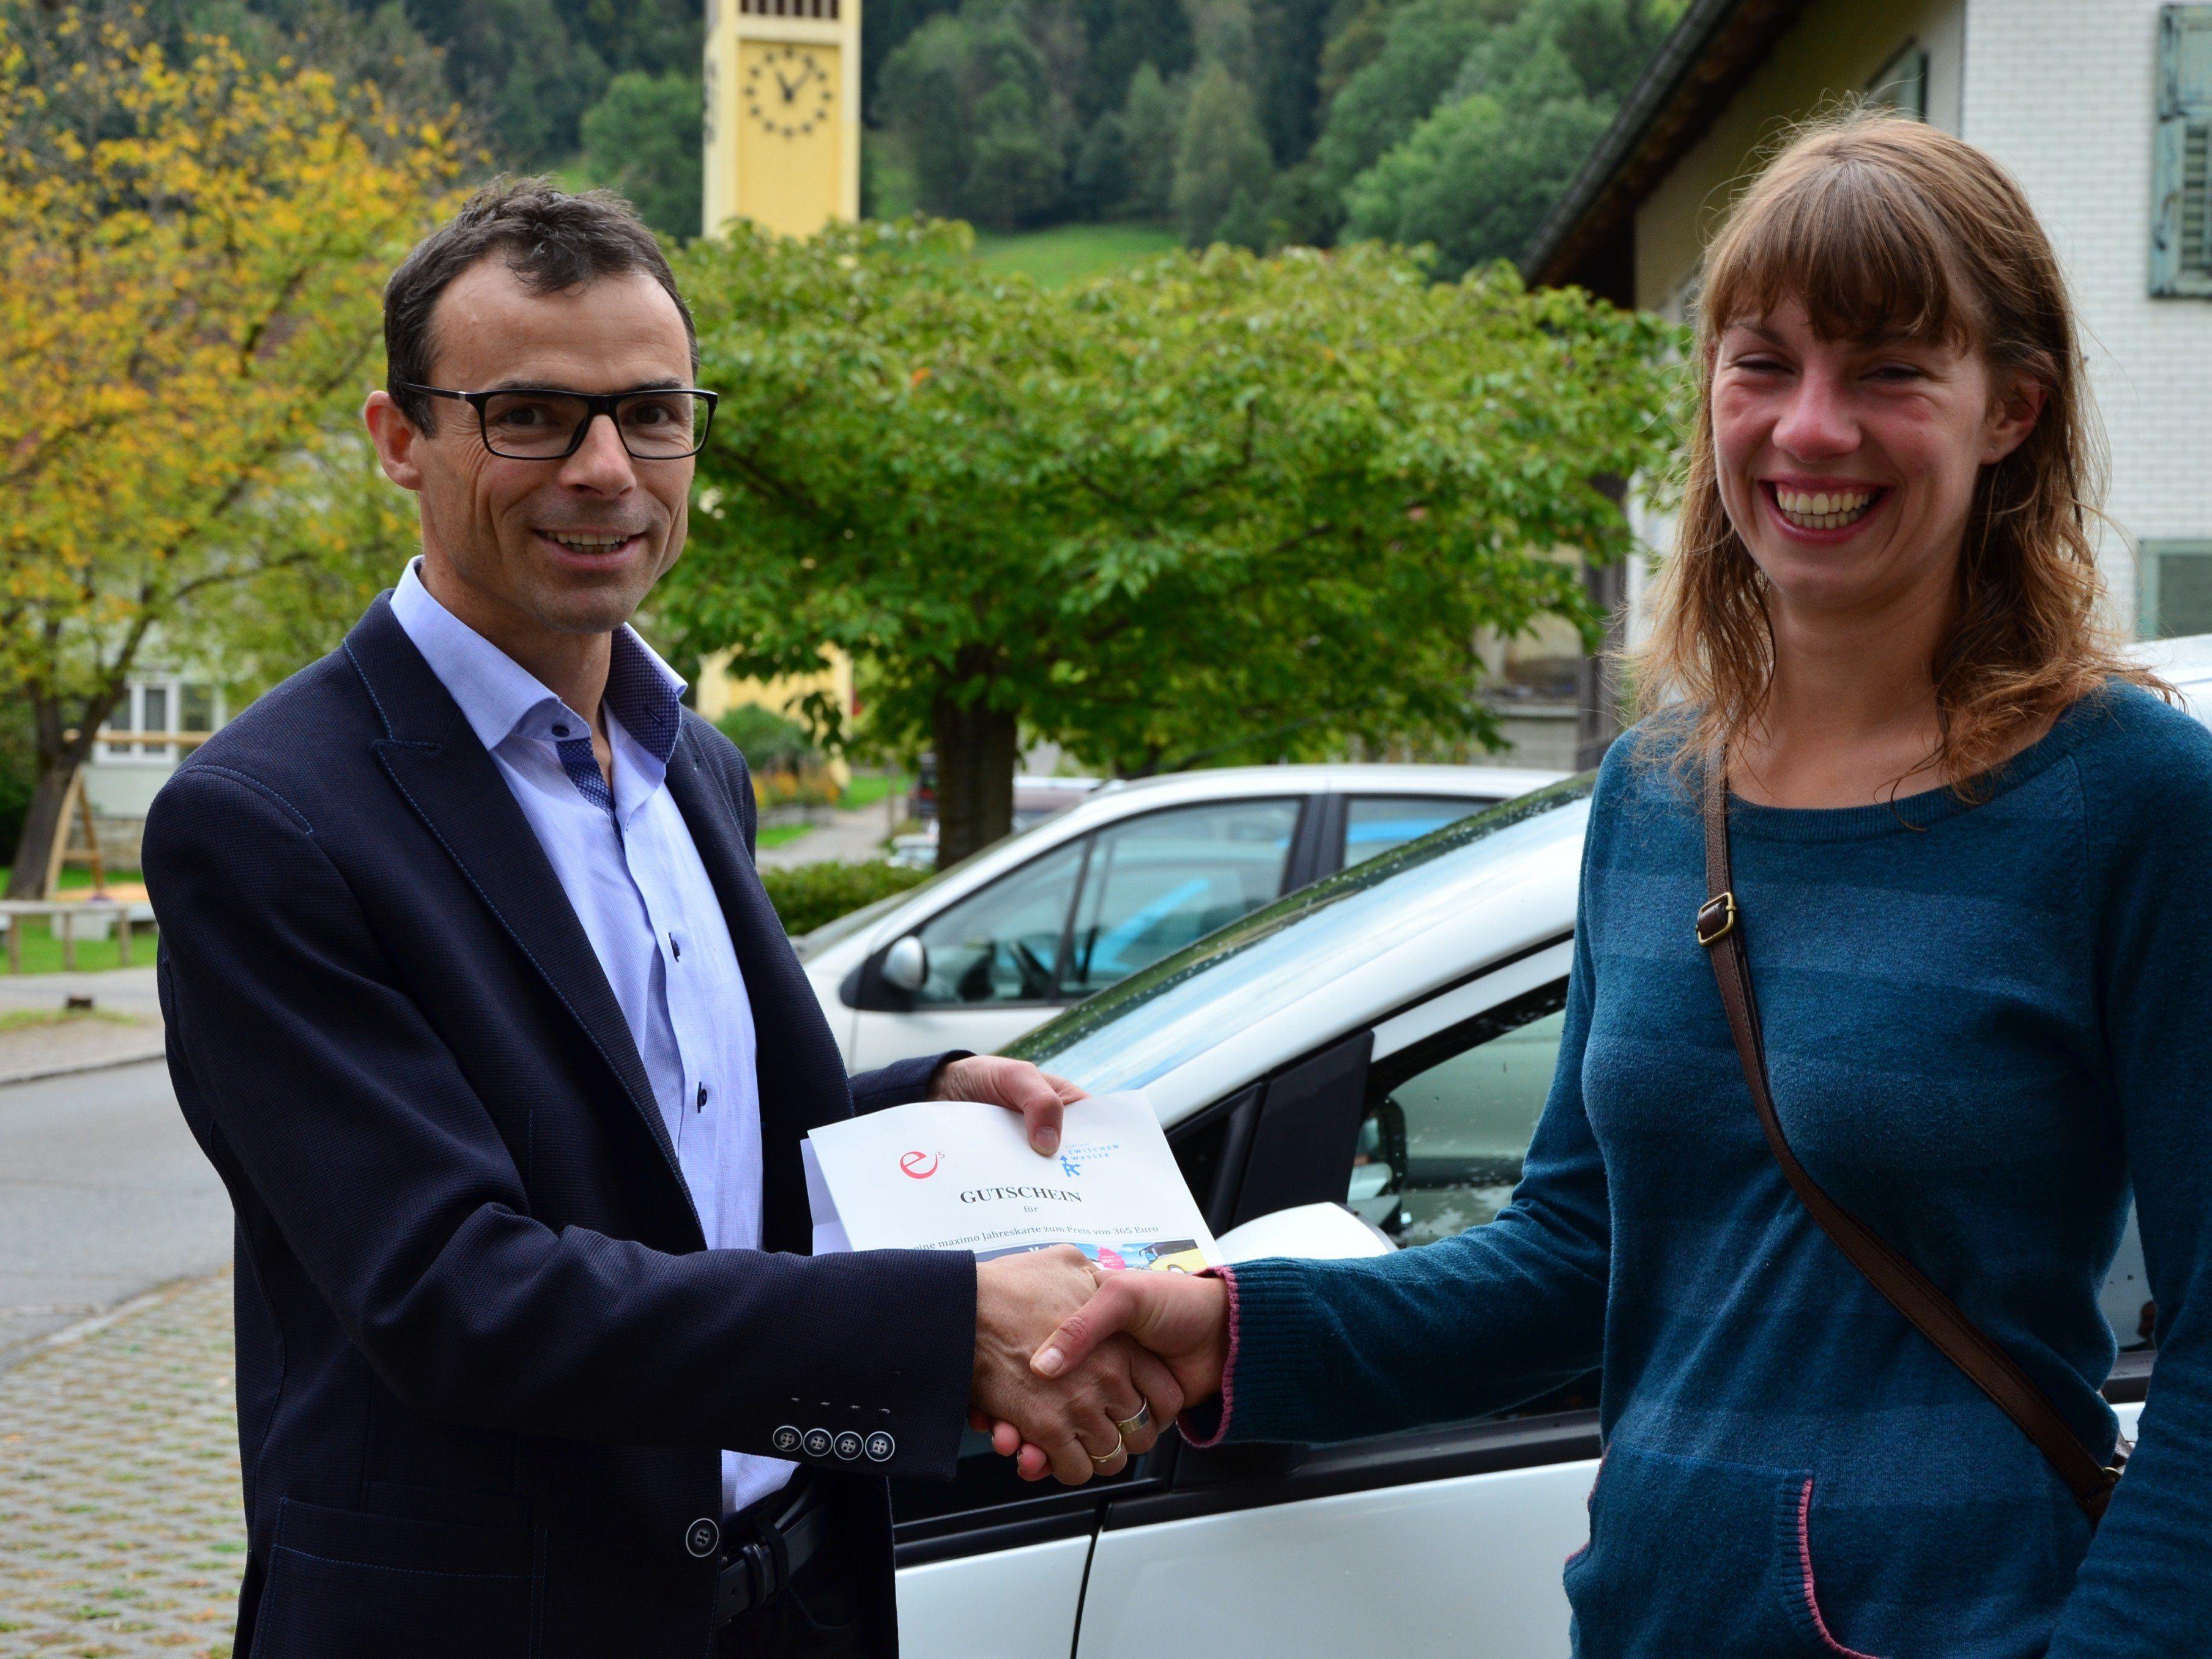 Bürgermeister Kilian Tschabrun gratuliert Melanie Maier zum Gewinn des jahrestickets.